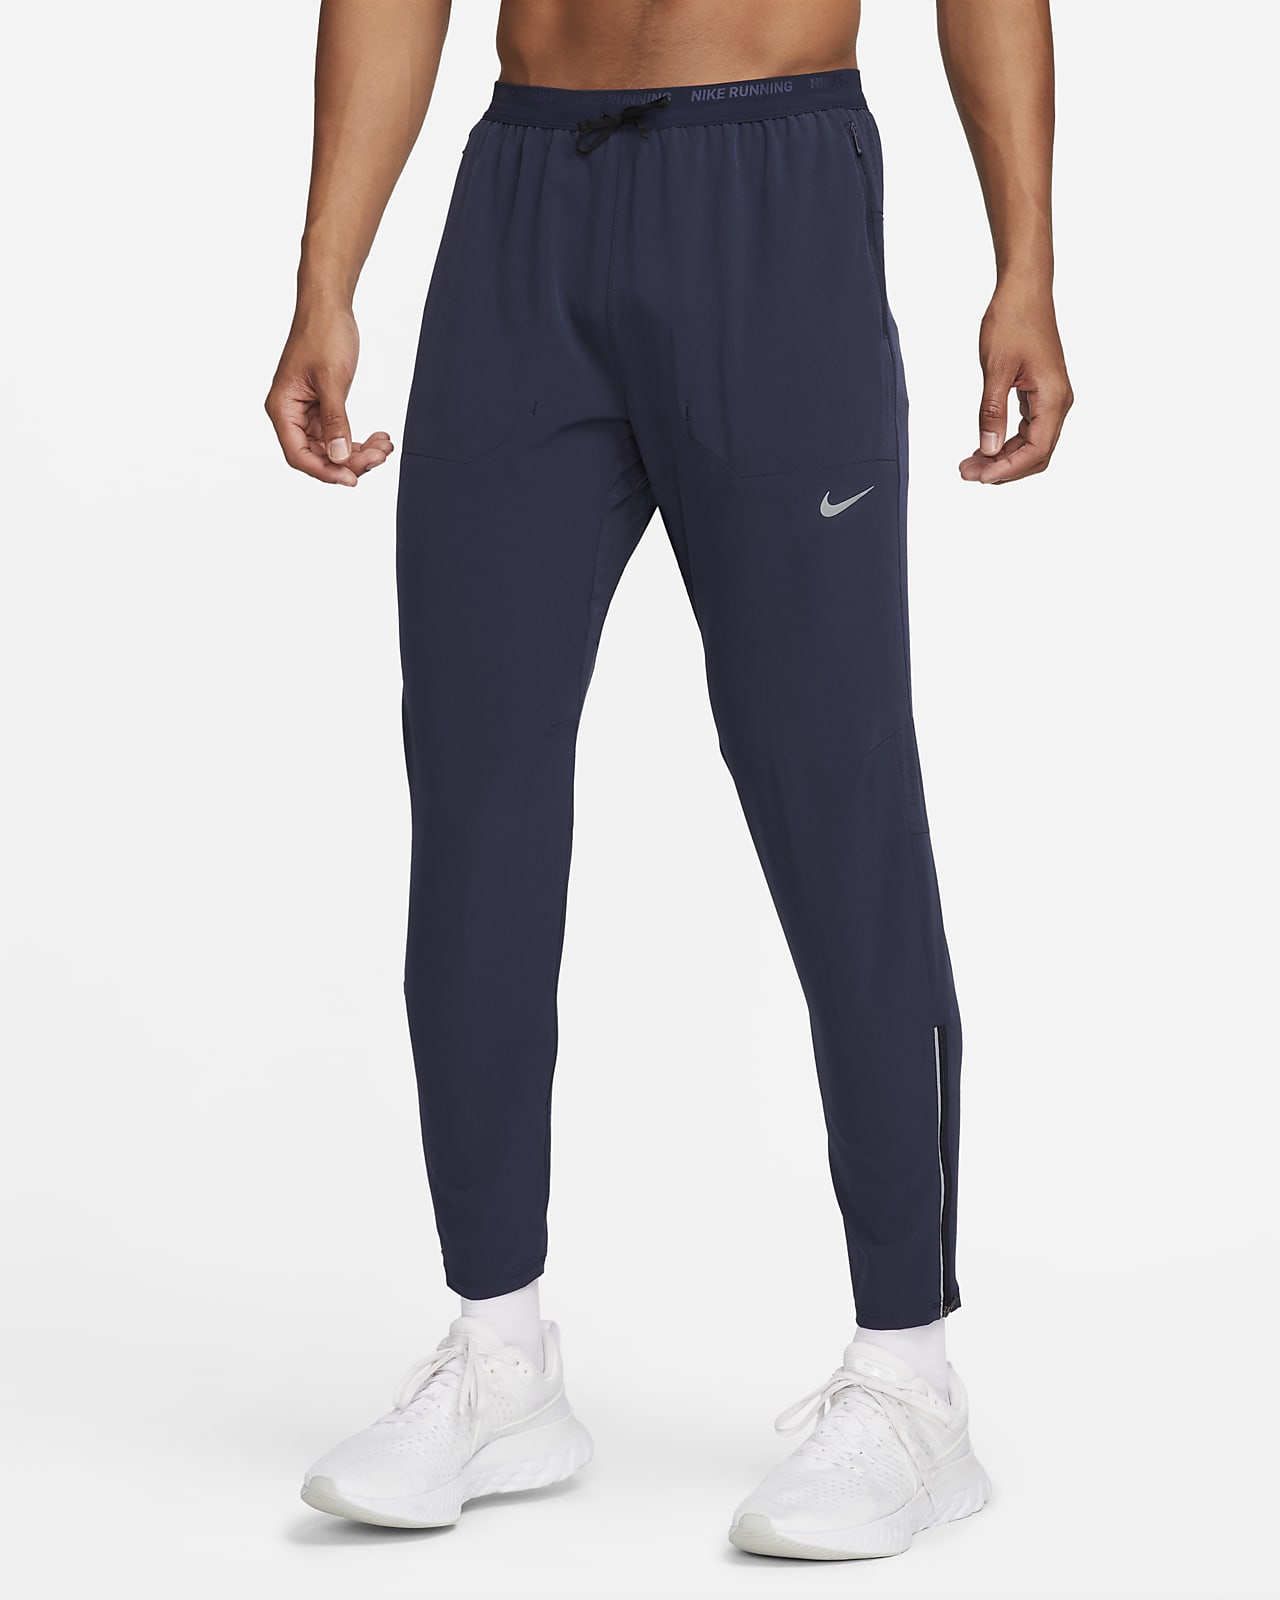 Ανδρικό υφαντό παντελόνι για τρέξιμο Dri-FIT Nike Phenom